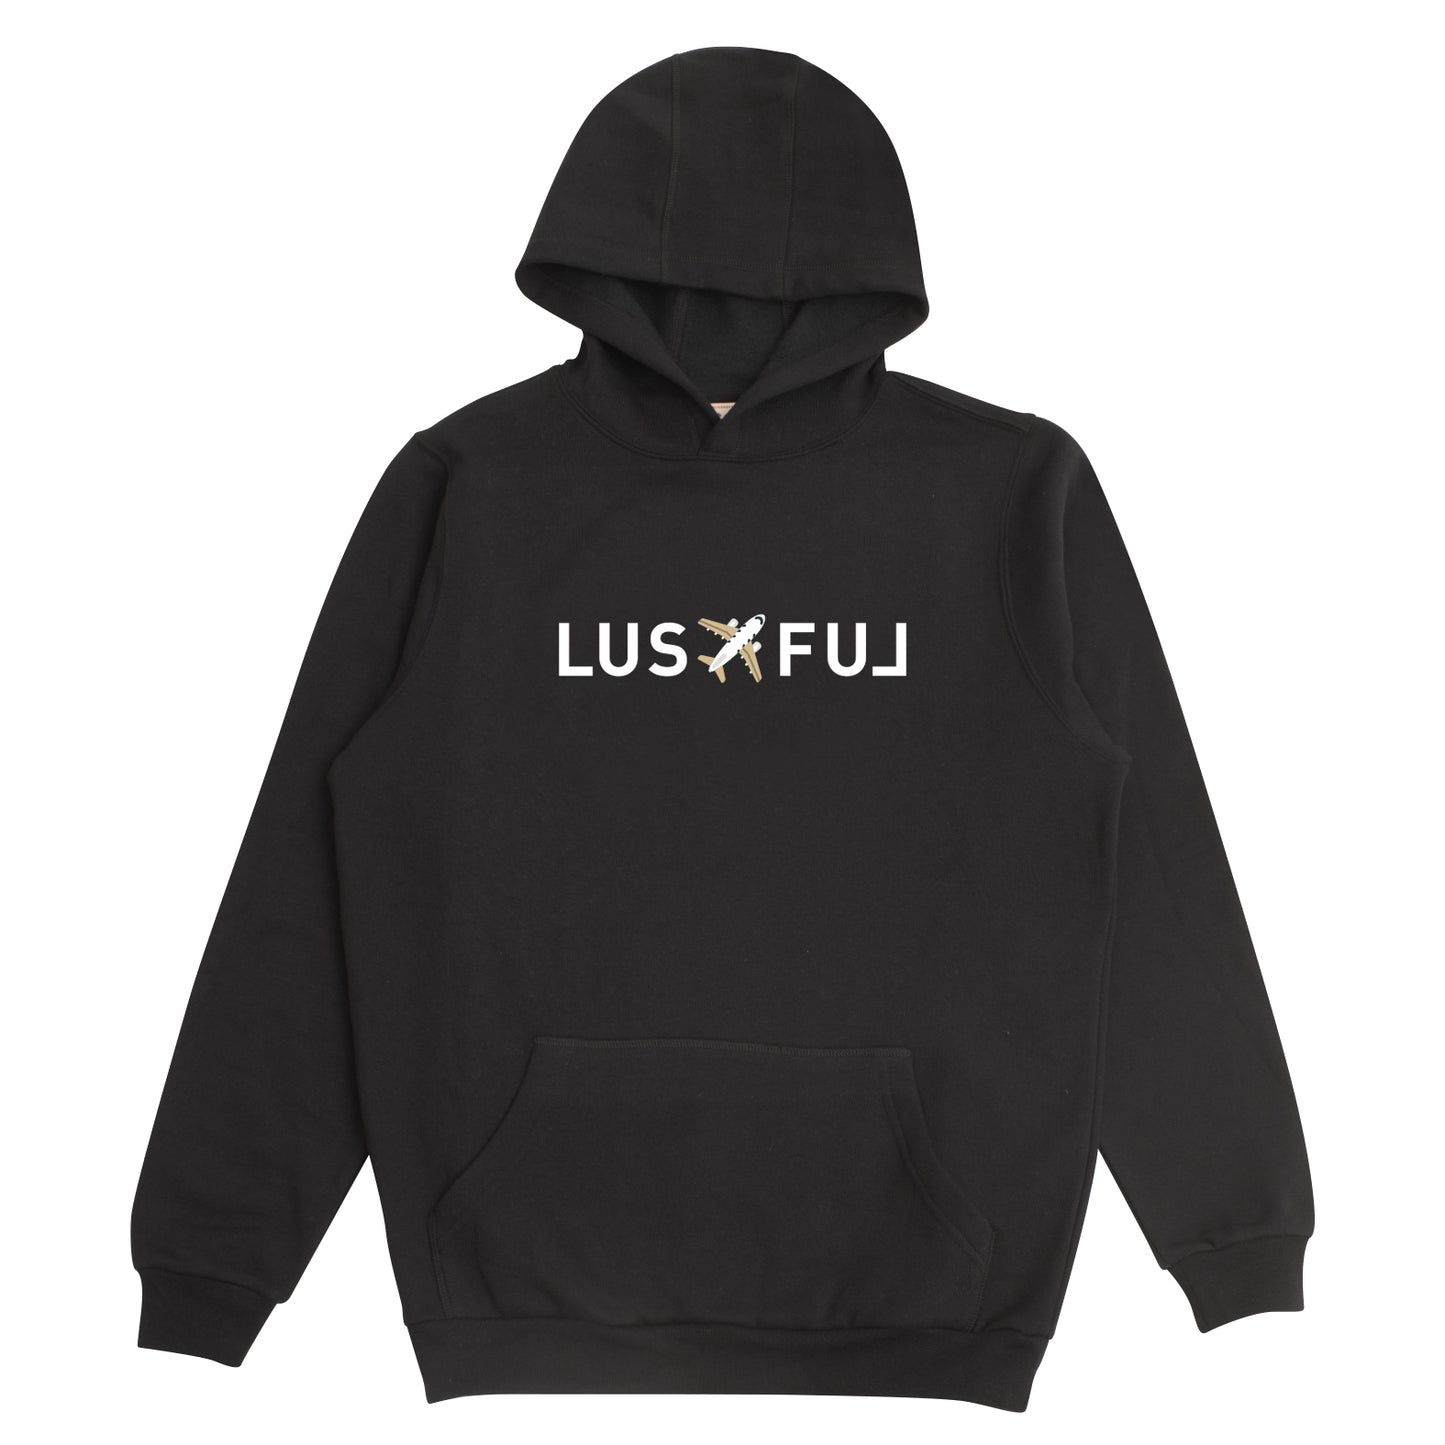 LAX hoodie in black